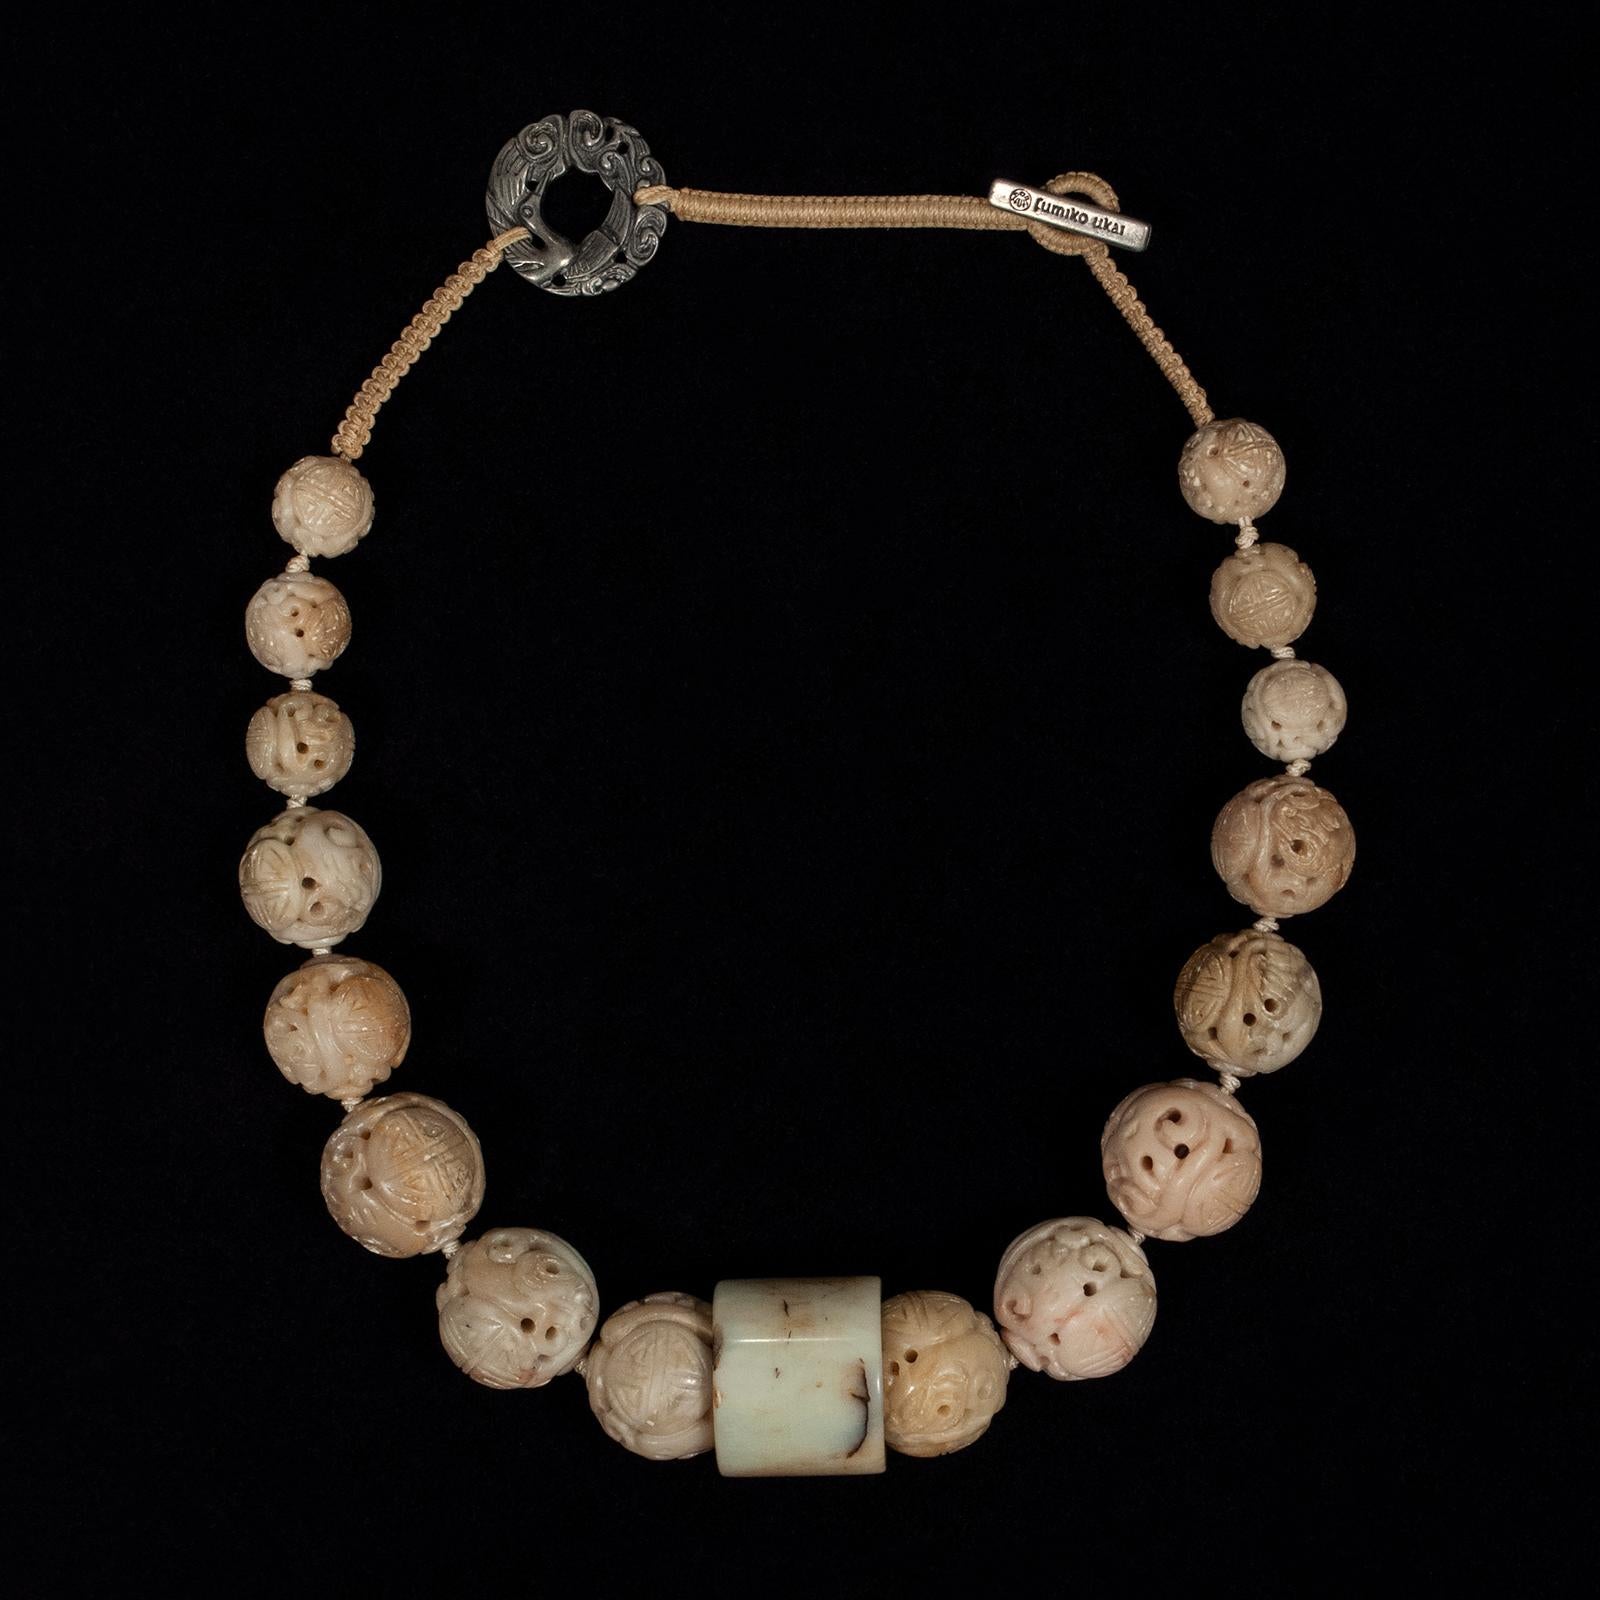 Collier de pierre et de jade du 20e siècle par Fumiko Ukai de Berkeley, CA

Un élégant collier créé par la regrettée designer de bijoux de Berkeley, Fumiko Ukai, composé de perles en pierre taillée joliment graduées avec un anneau d'archer en jade